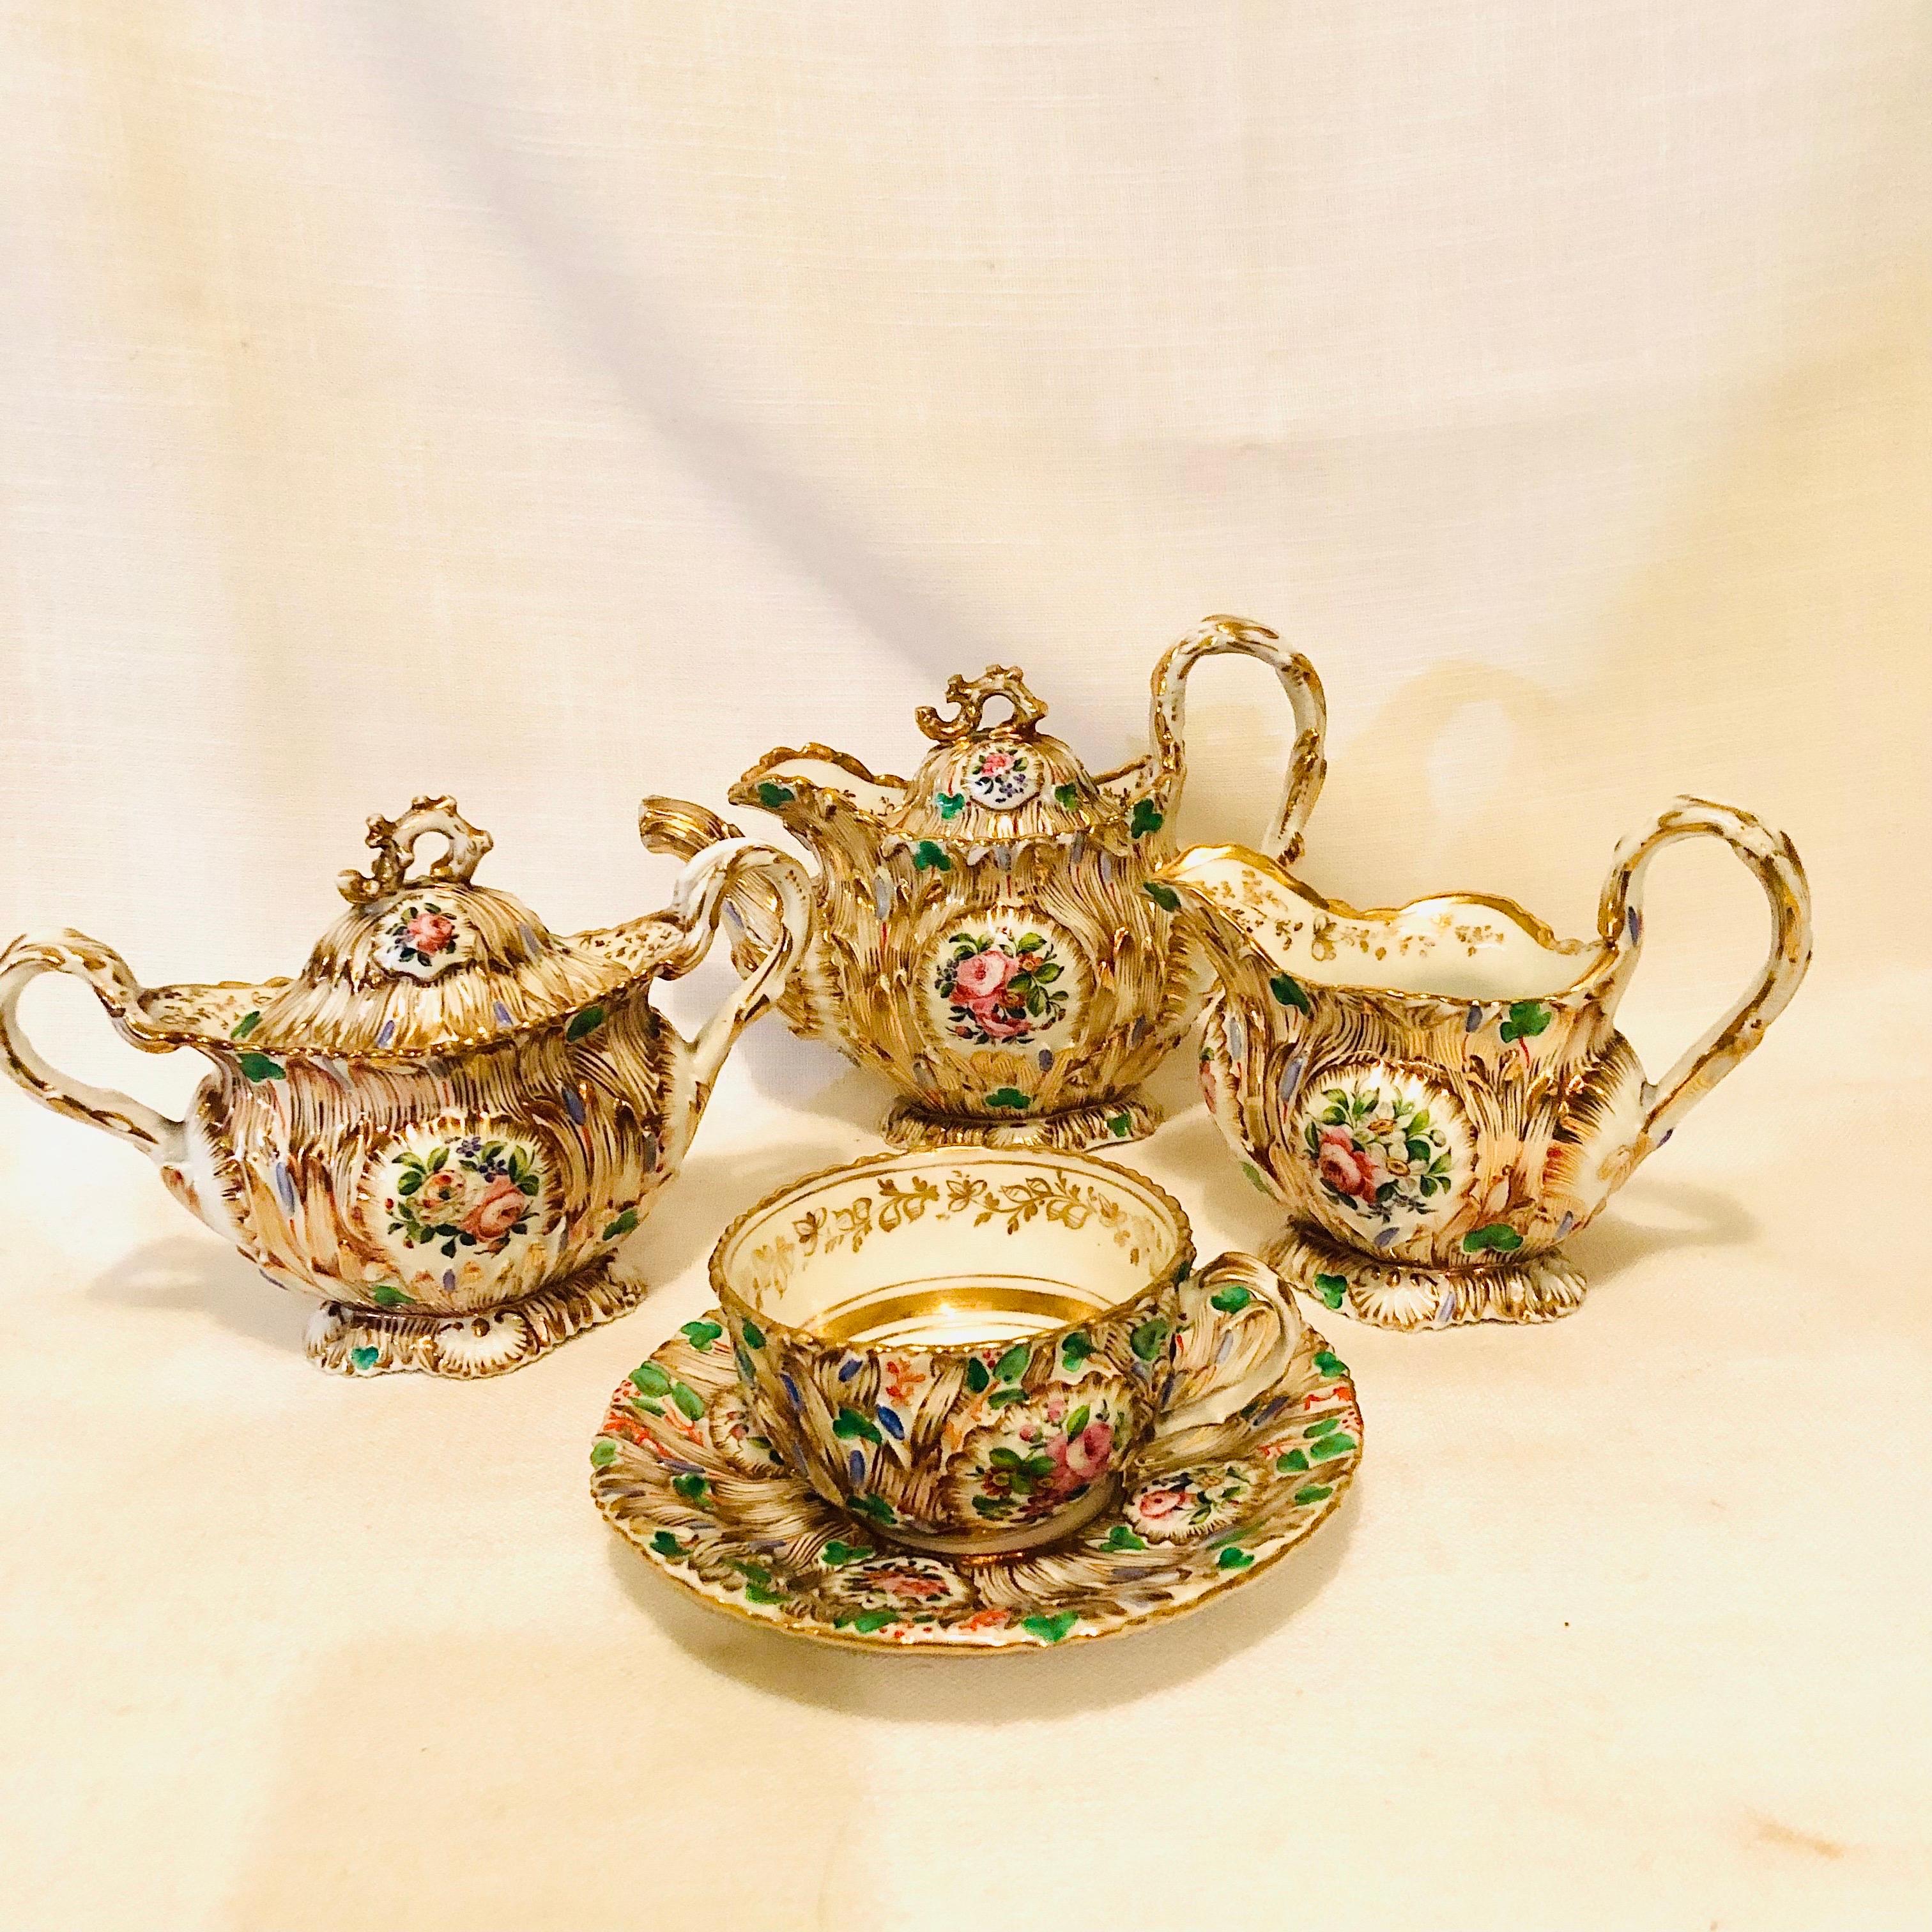 Dies ist ein fabelhaftes Jacob Petit Old Paris Porzellan Solitär Museum Qualität Tee-Set. Es ist reichlich mit Gold, Blumenkartuschen und vielen Farben im Rokokostil verziert, was eine Freude für das Auge ist. Dieses Teeservice stammt aus den 1830er